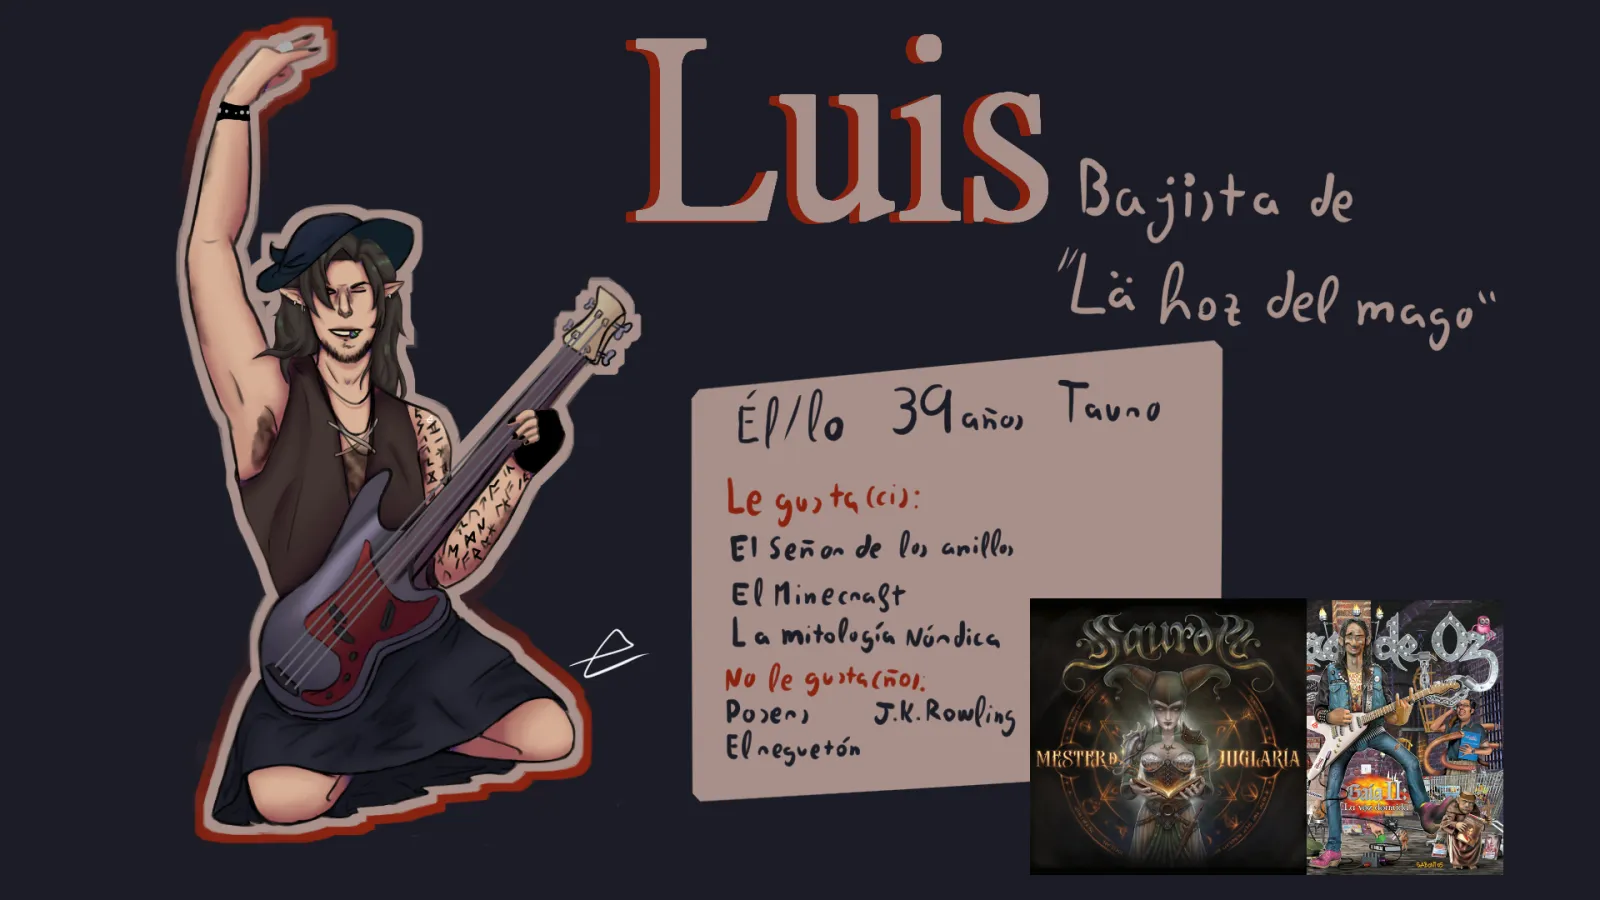 Dibujo final de Luis, un guitarrista, y una breve descripción de él y su personalidad.